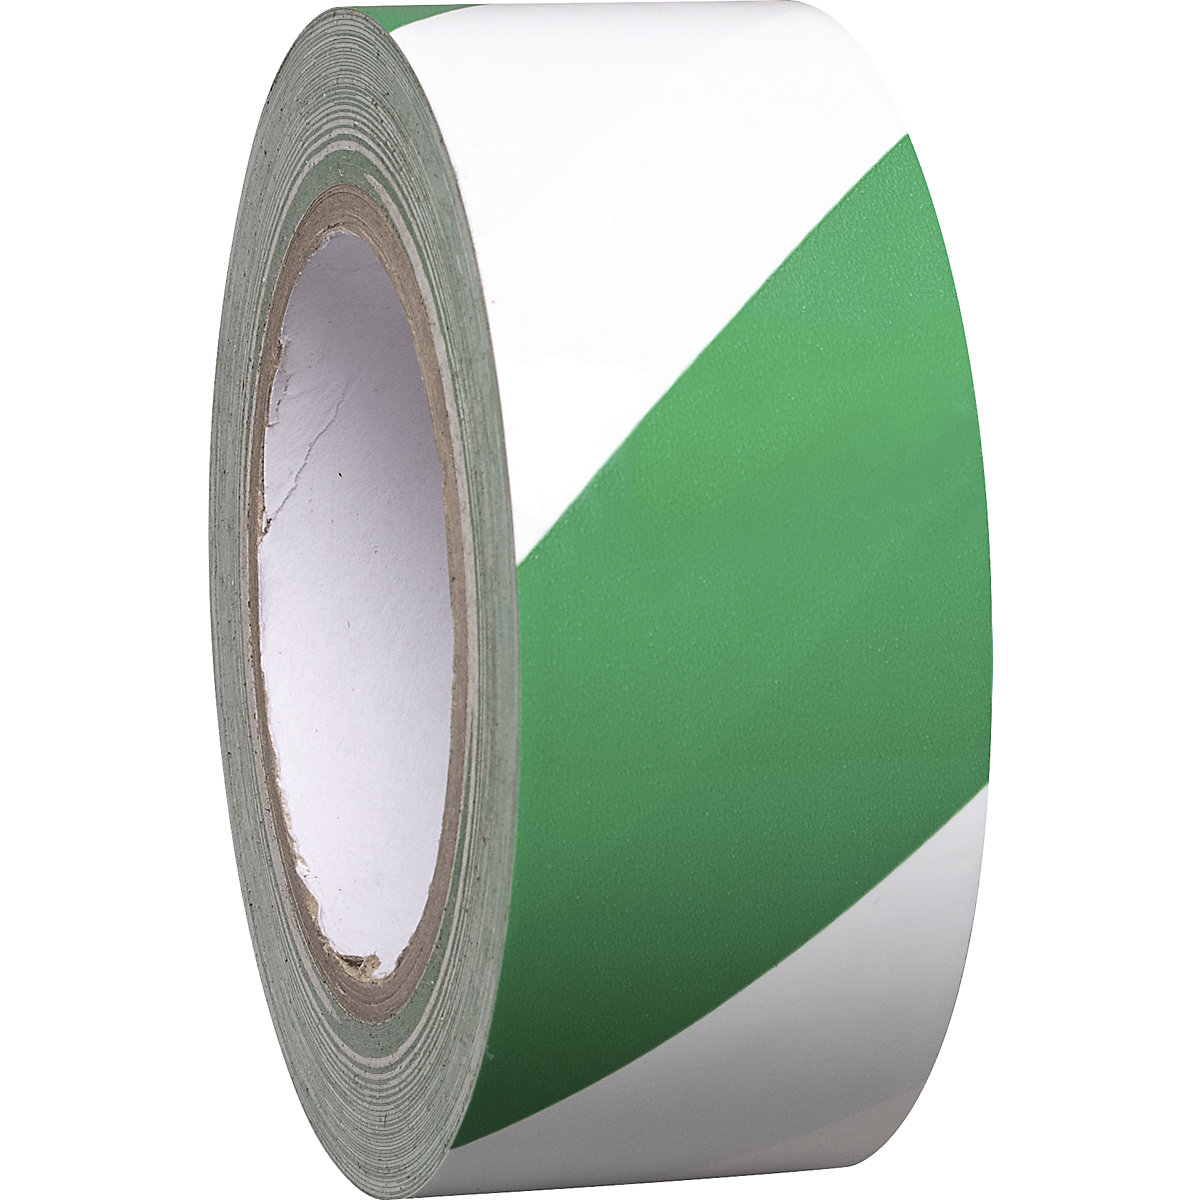 Bodemmarkeerband van vinyl, tweekleurig, breedte 50 mm, groen / wit, VE = 8 rollen-3